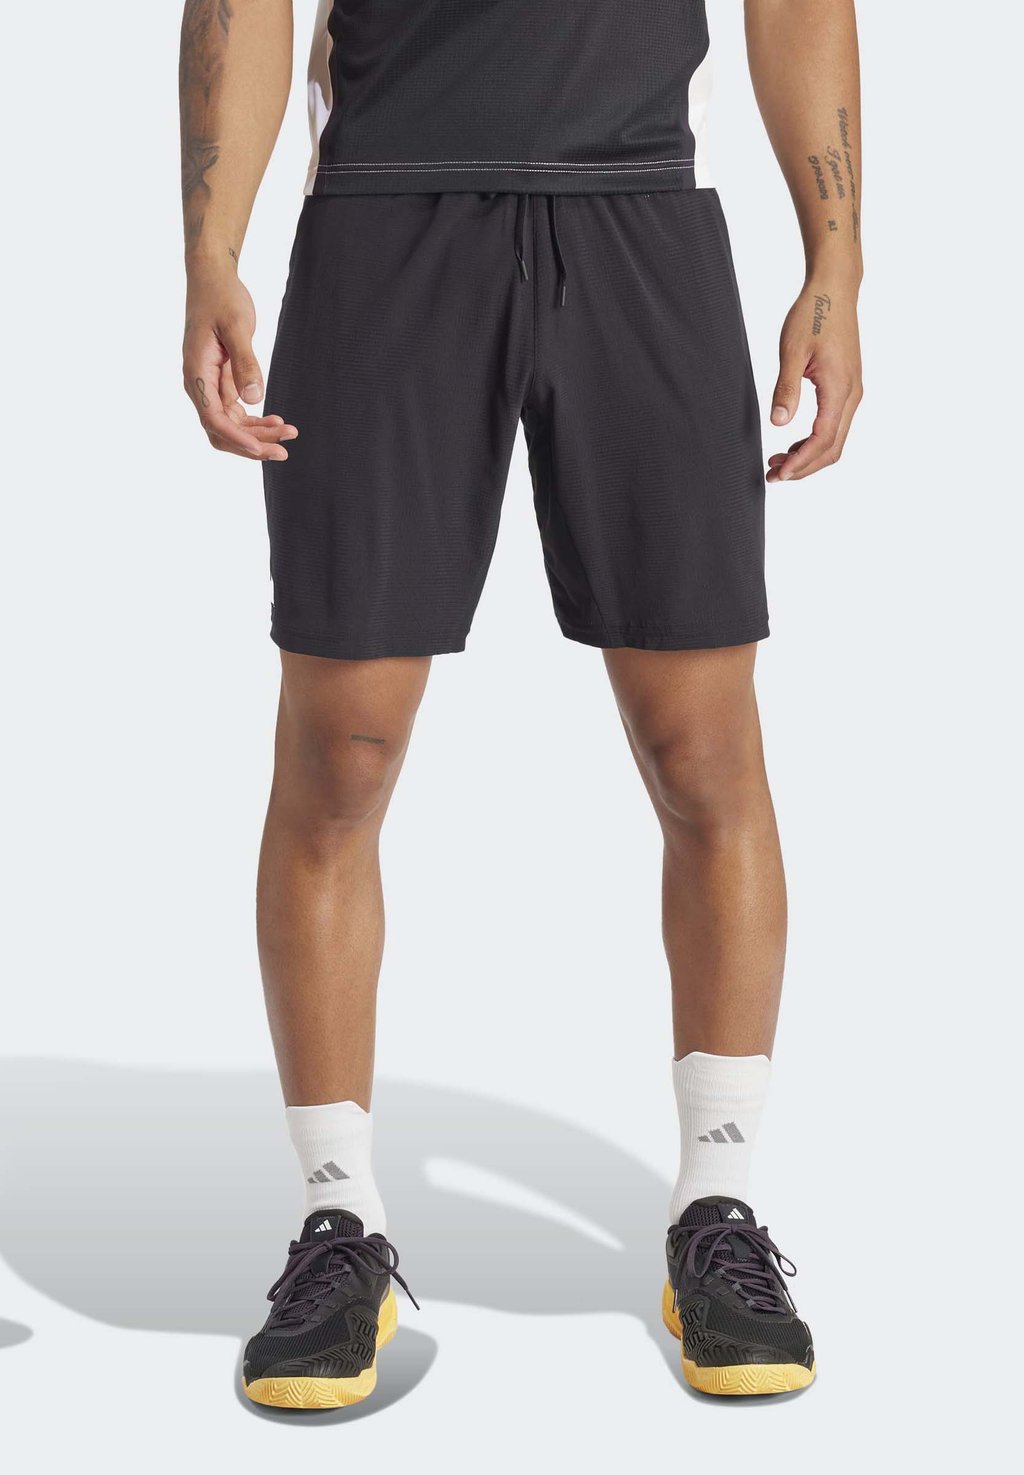 Спортивные шорты Ergo Adidas, черный